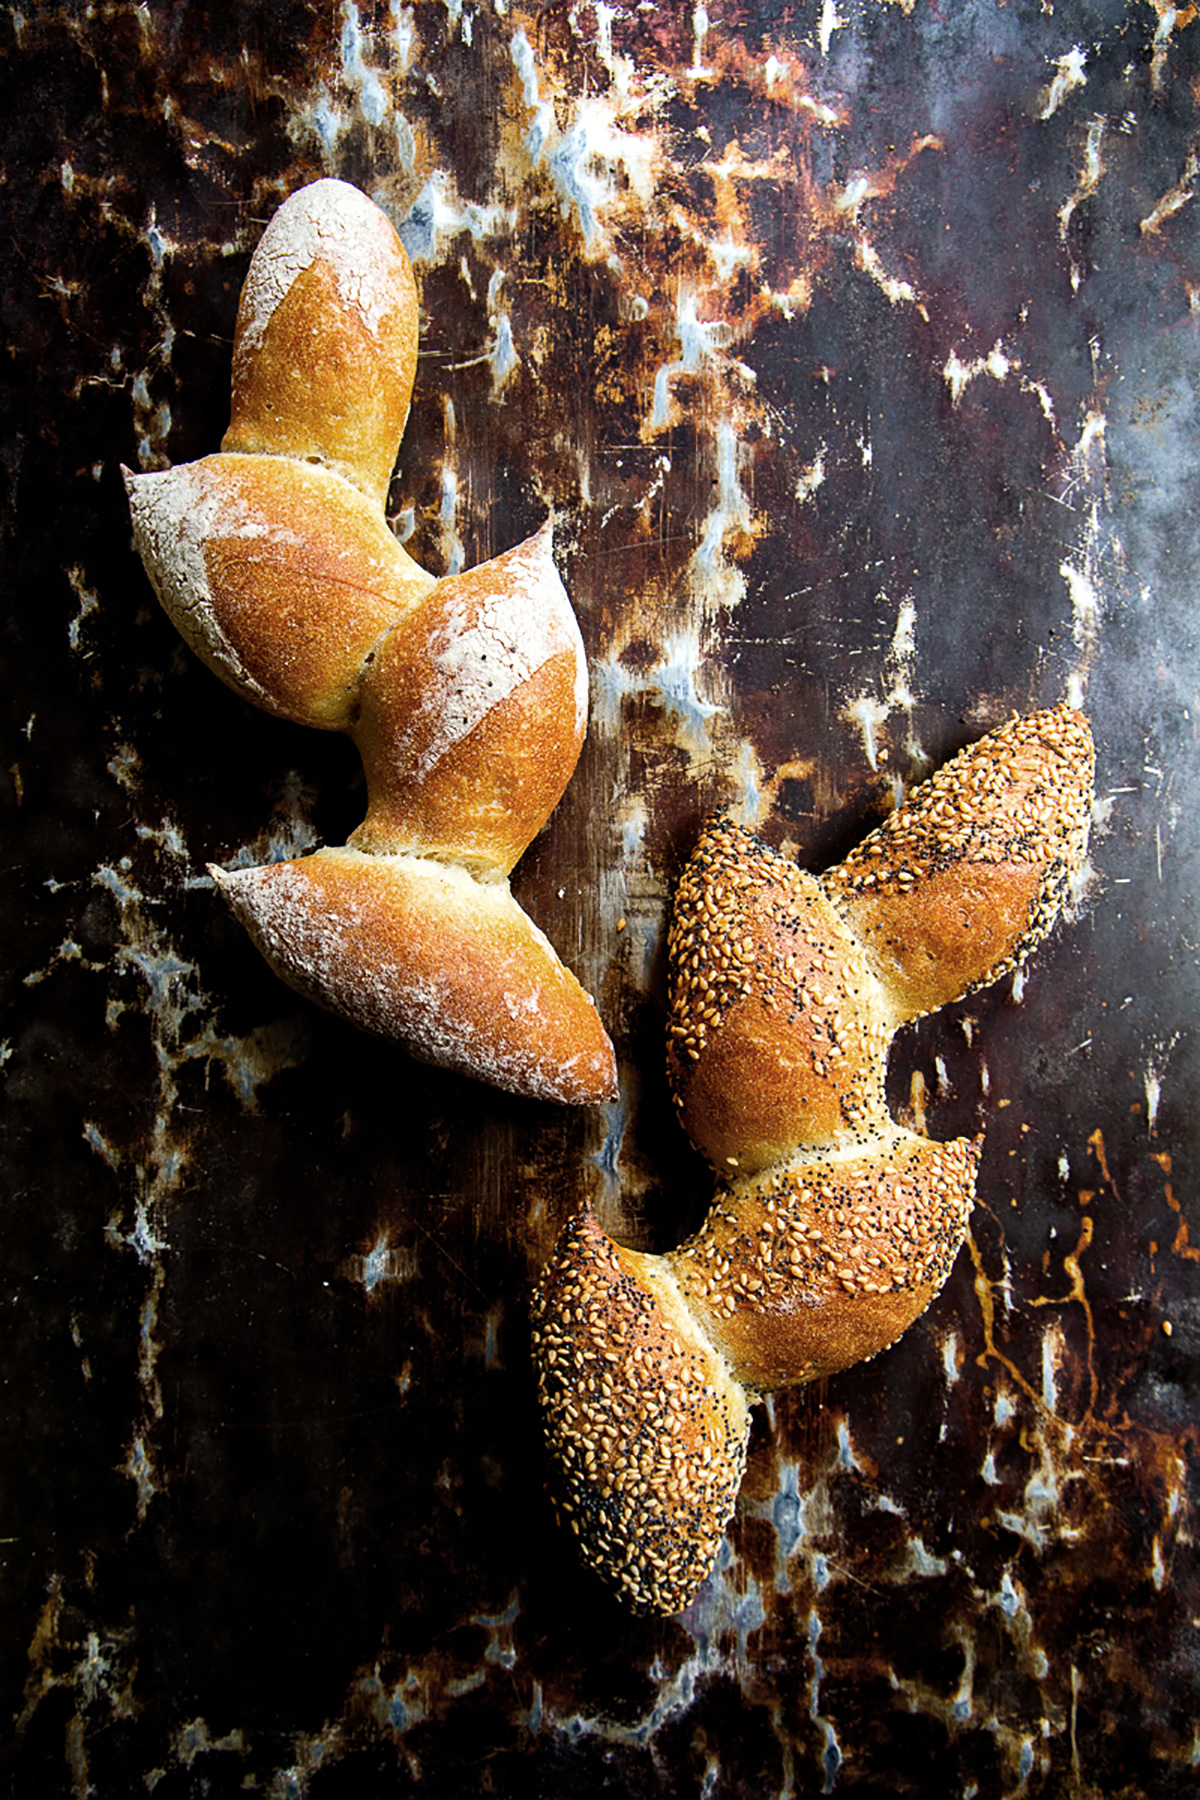 Grateful-Bread via @kingarthurflour